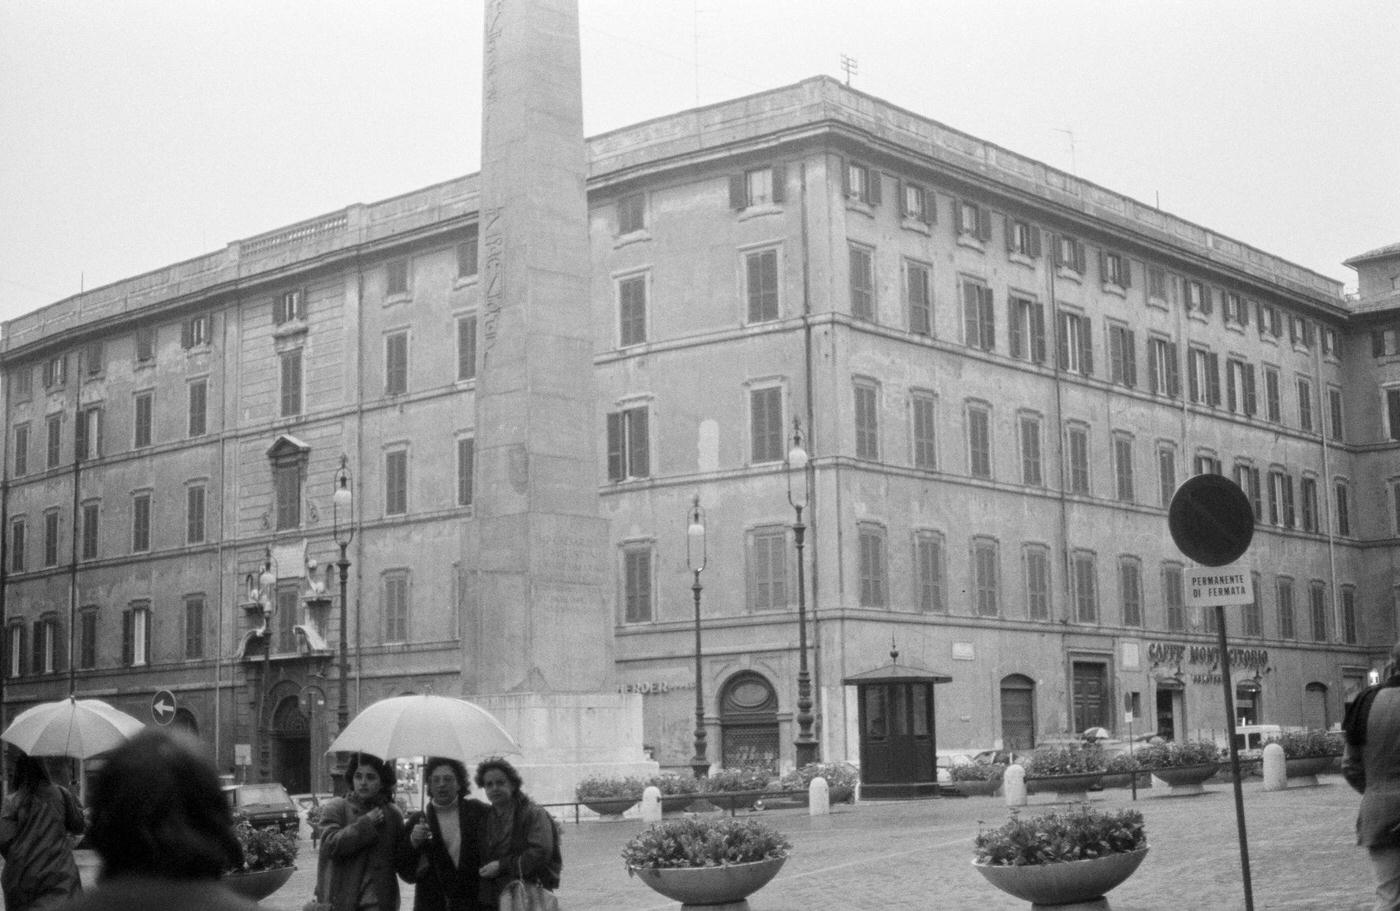 St. John Lateran Square in Rome, December 1982